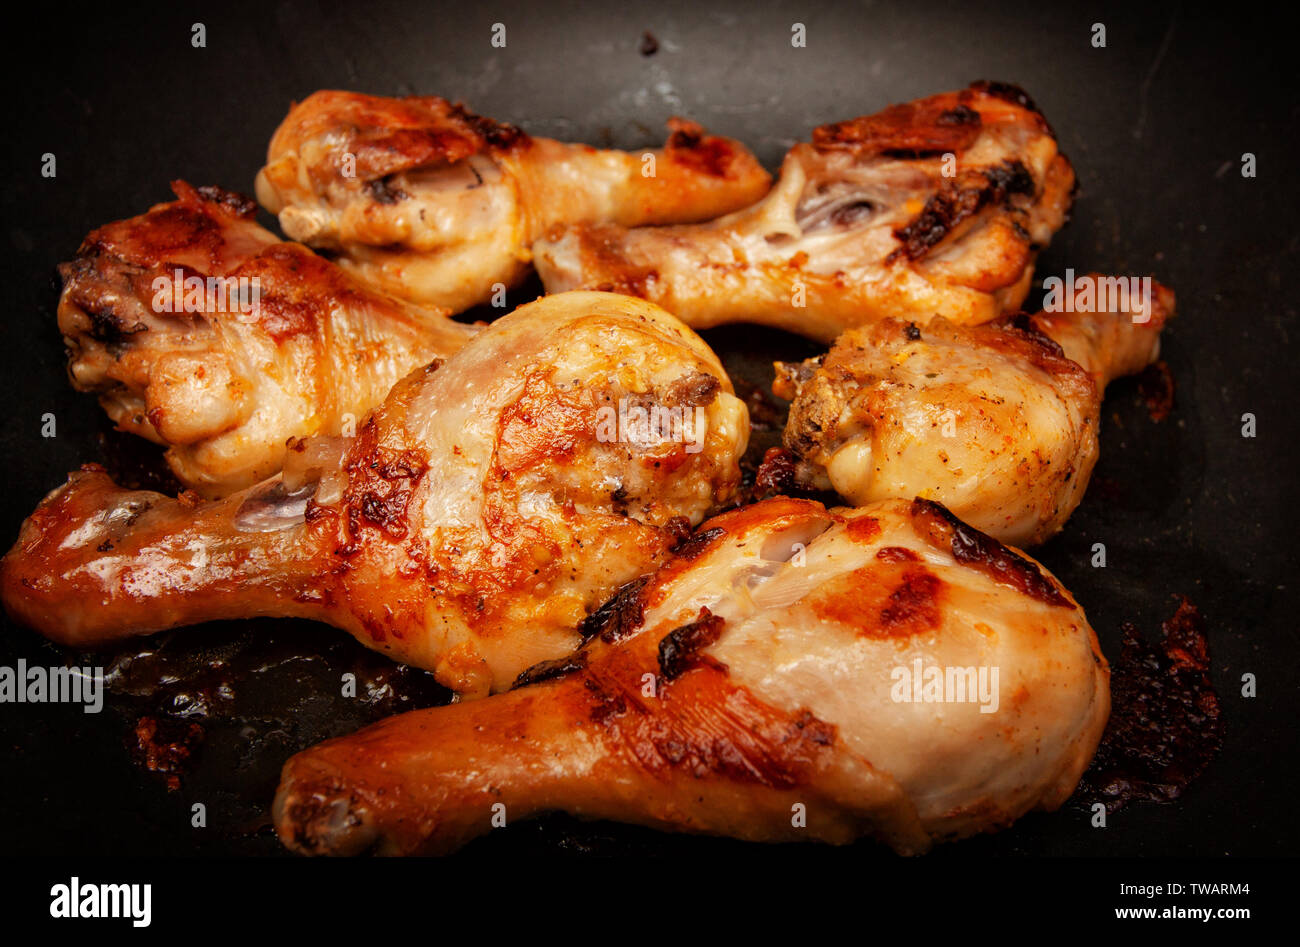 Gebratene Hähnchenschenkel in einer Pfanne Stockfotografie - Alamy